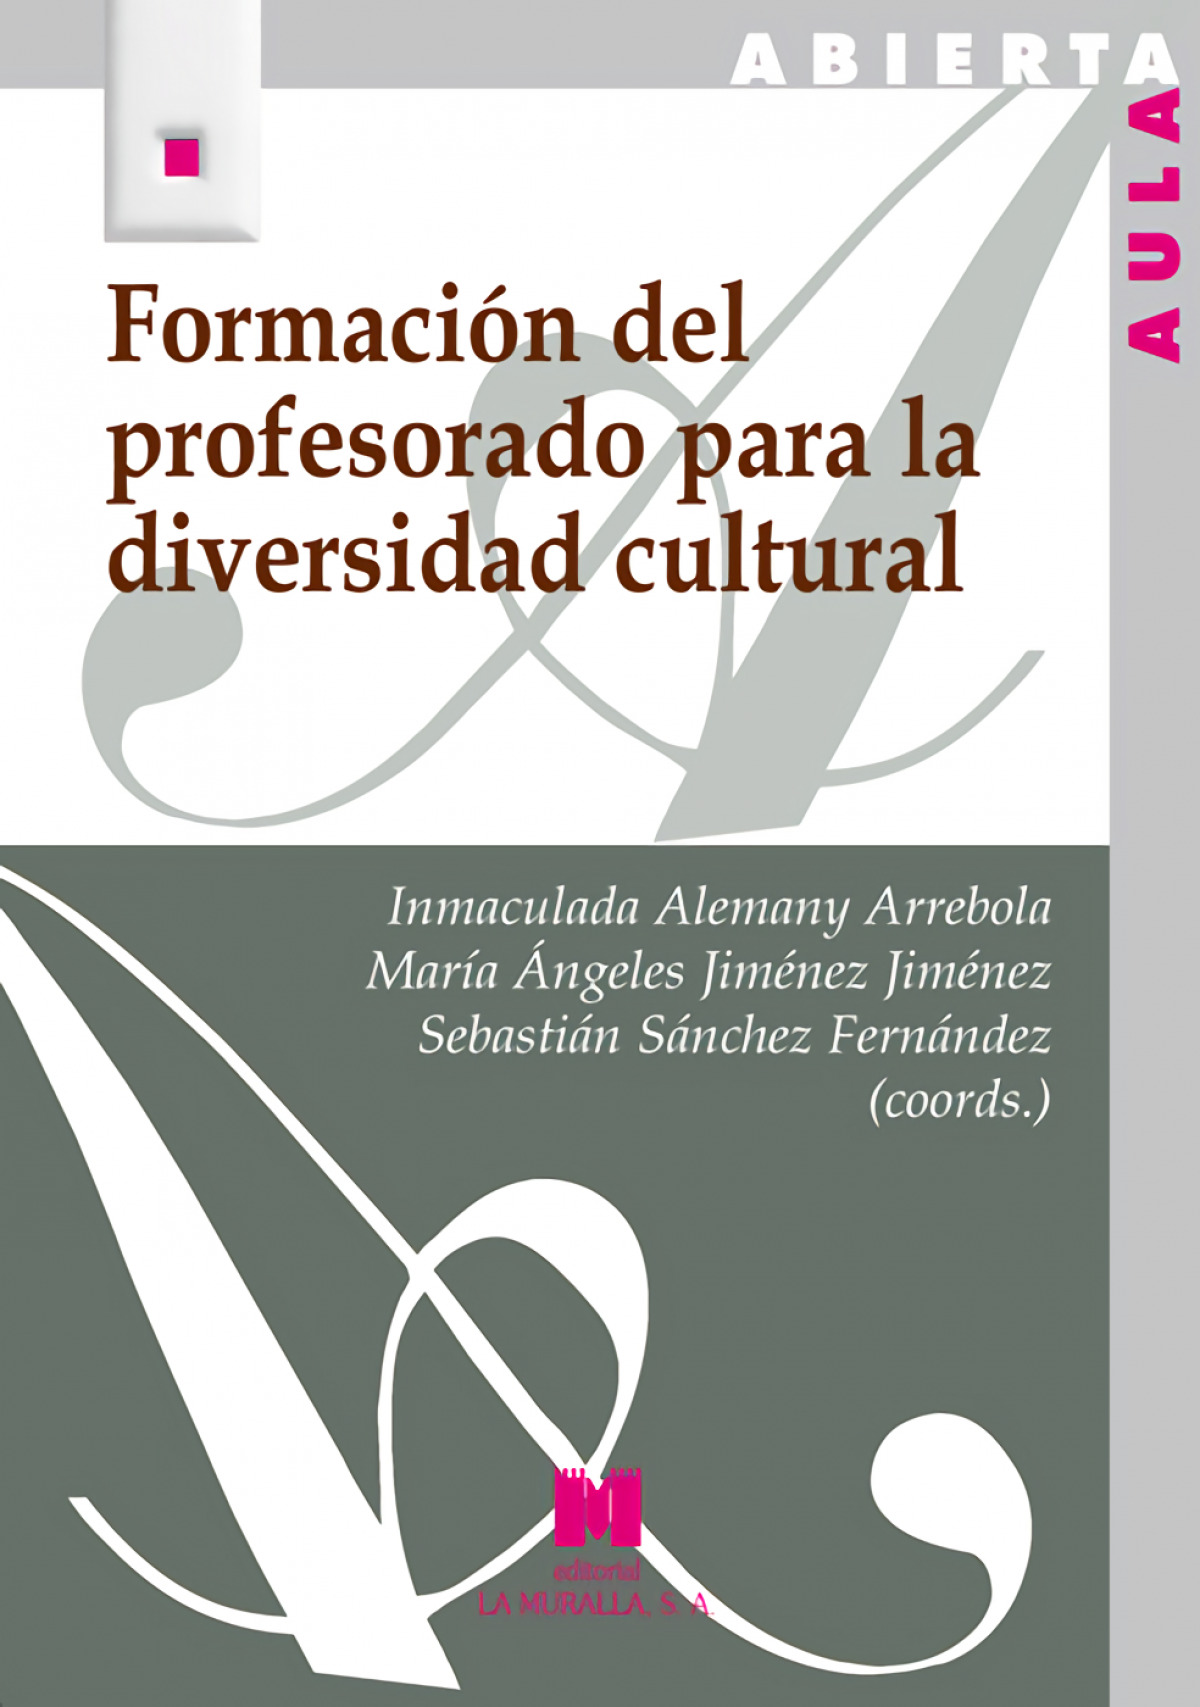 Imagen de portada del libro Formación del profesorado para la diversidad cultural